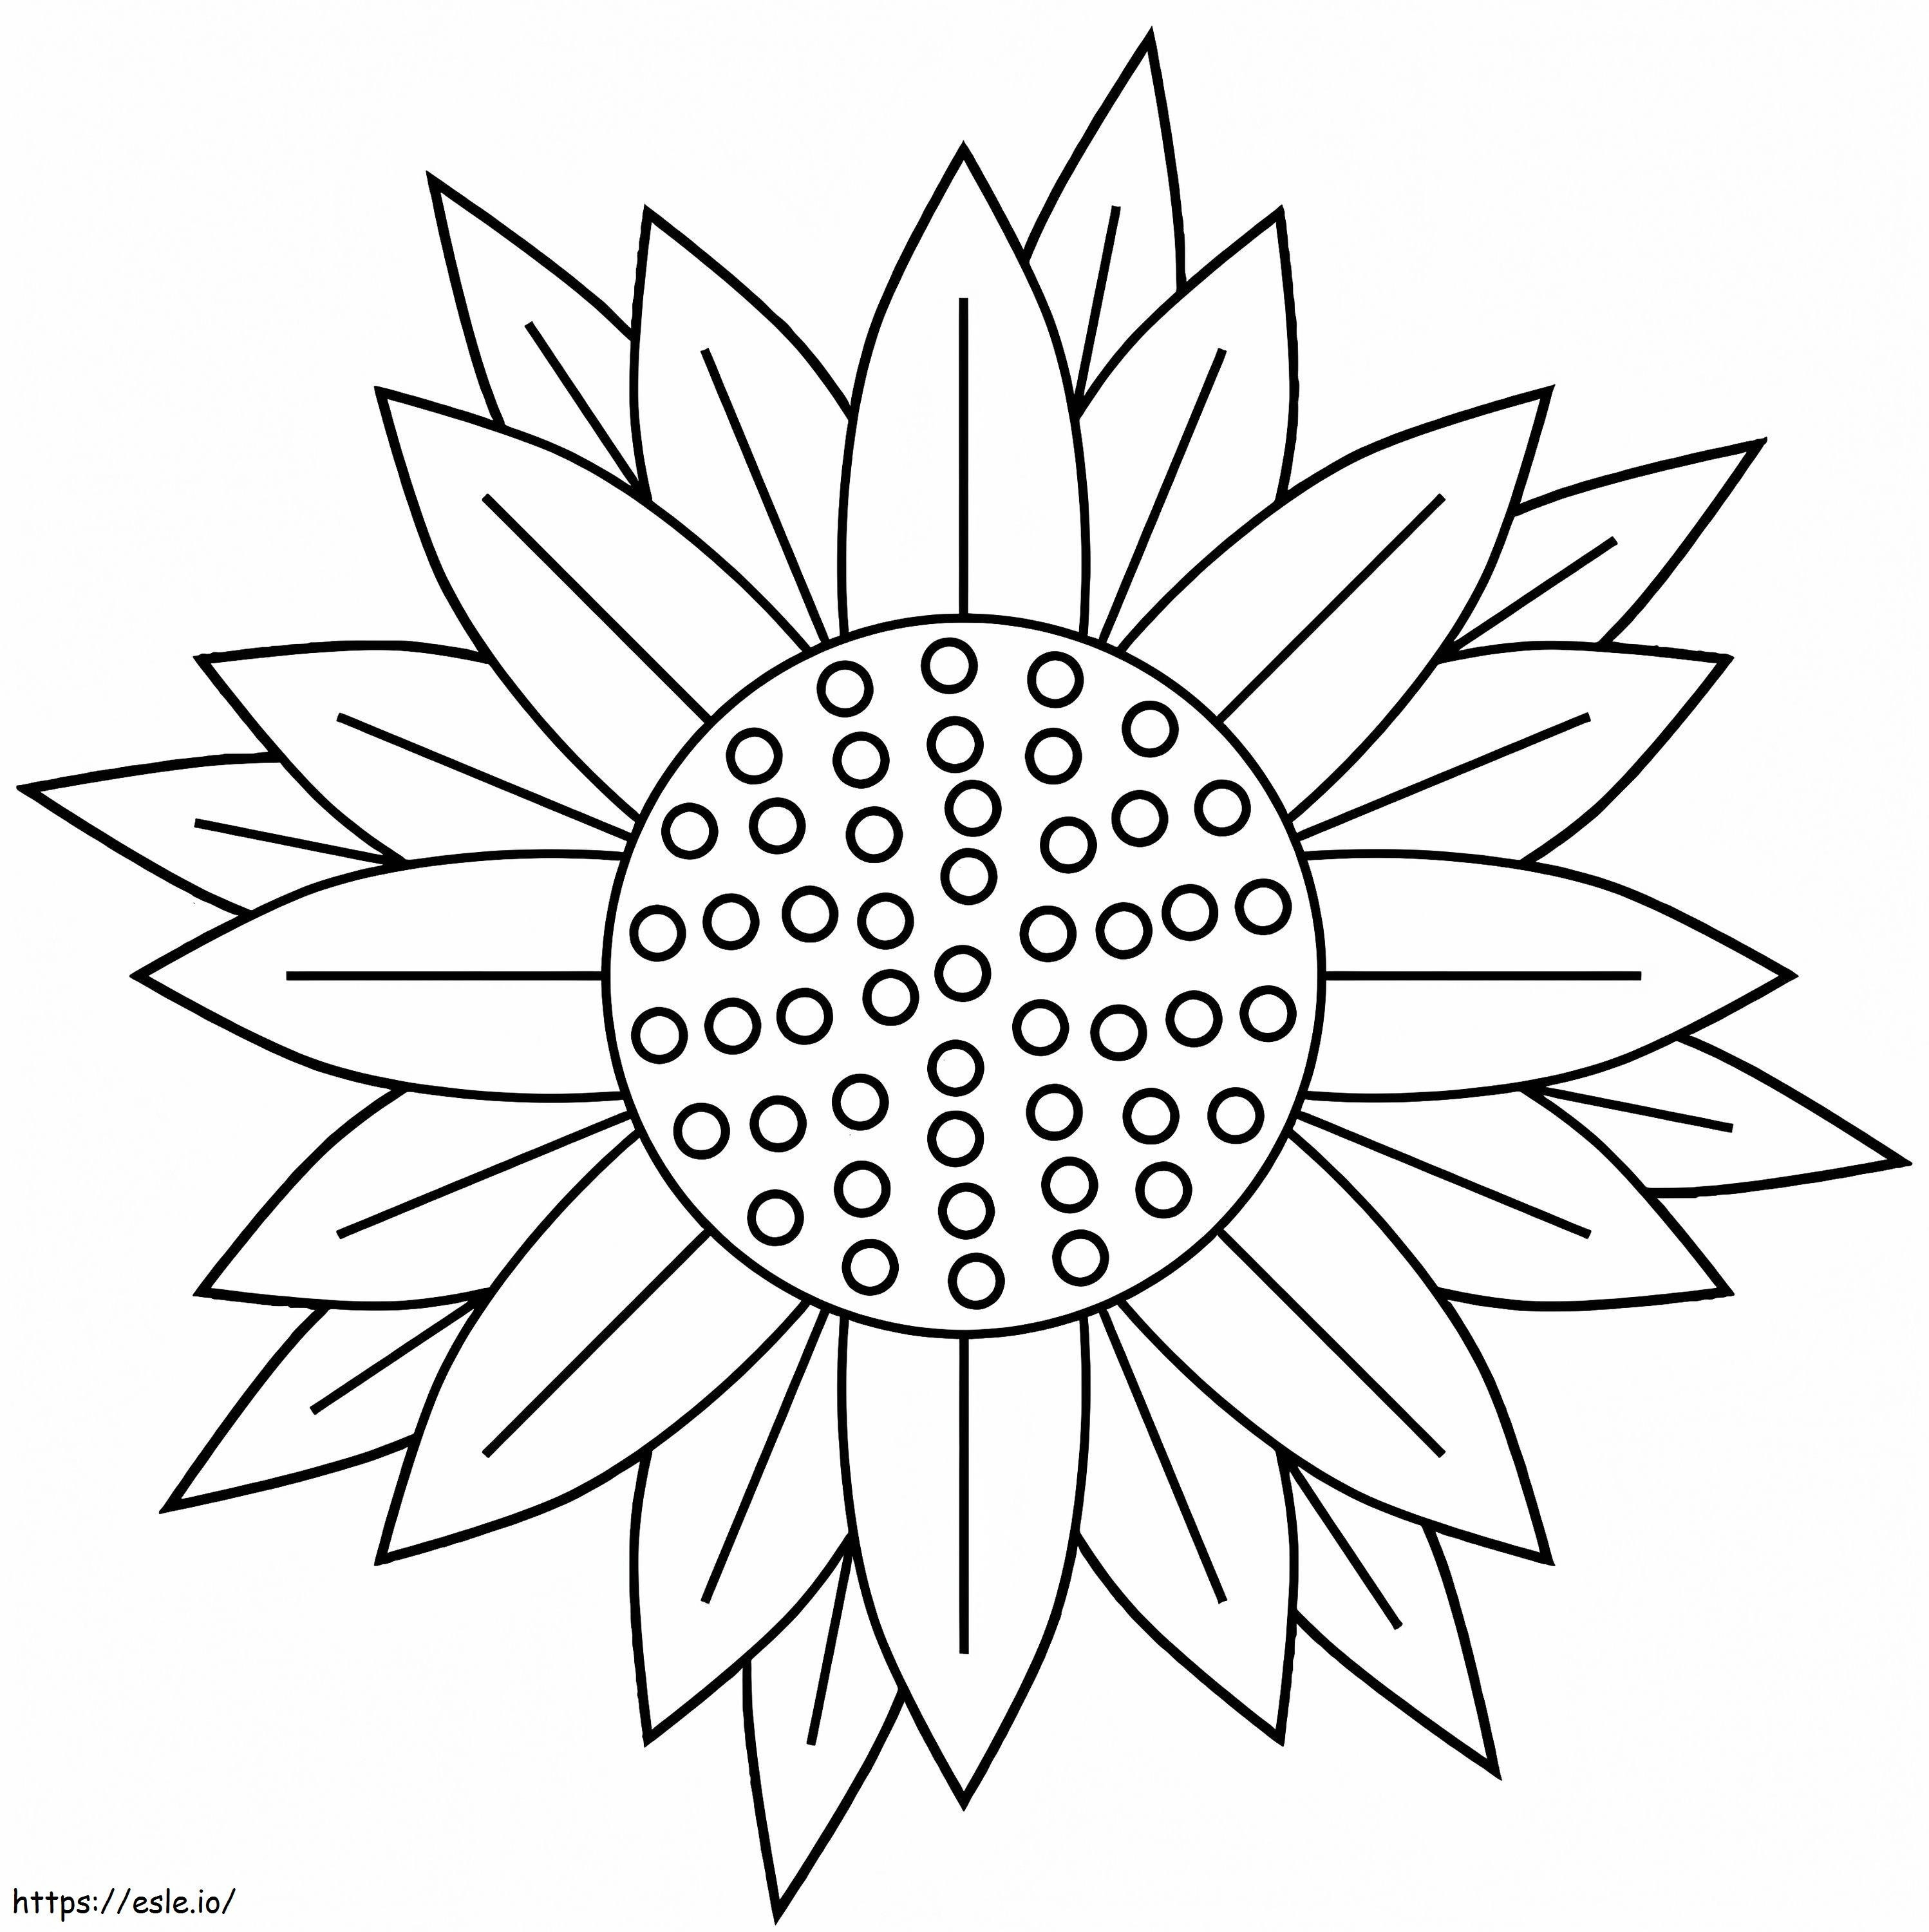 Sehr einfache Sonnenblume ausmalbilder